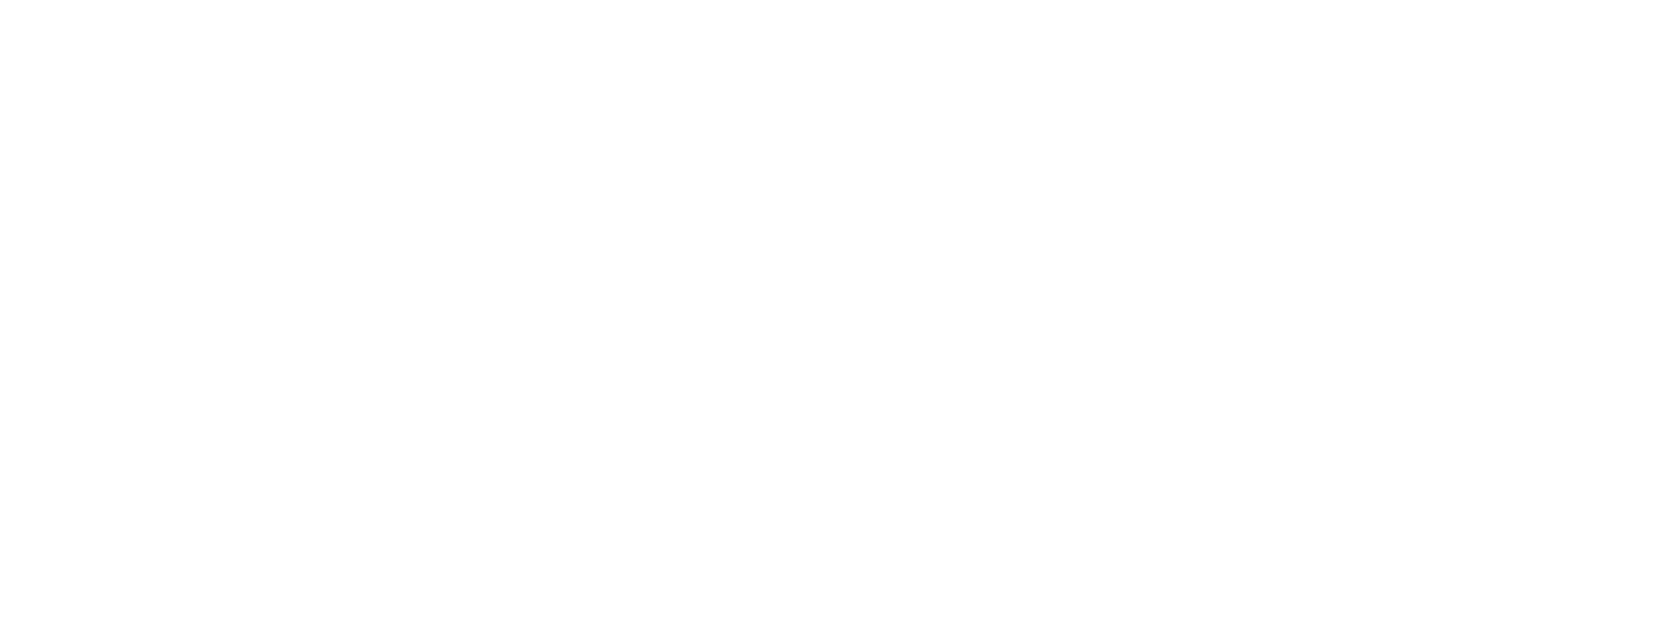 Логотип Приморского парка победы